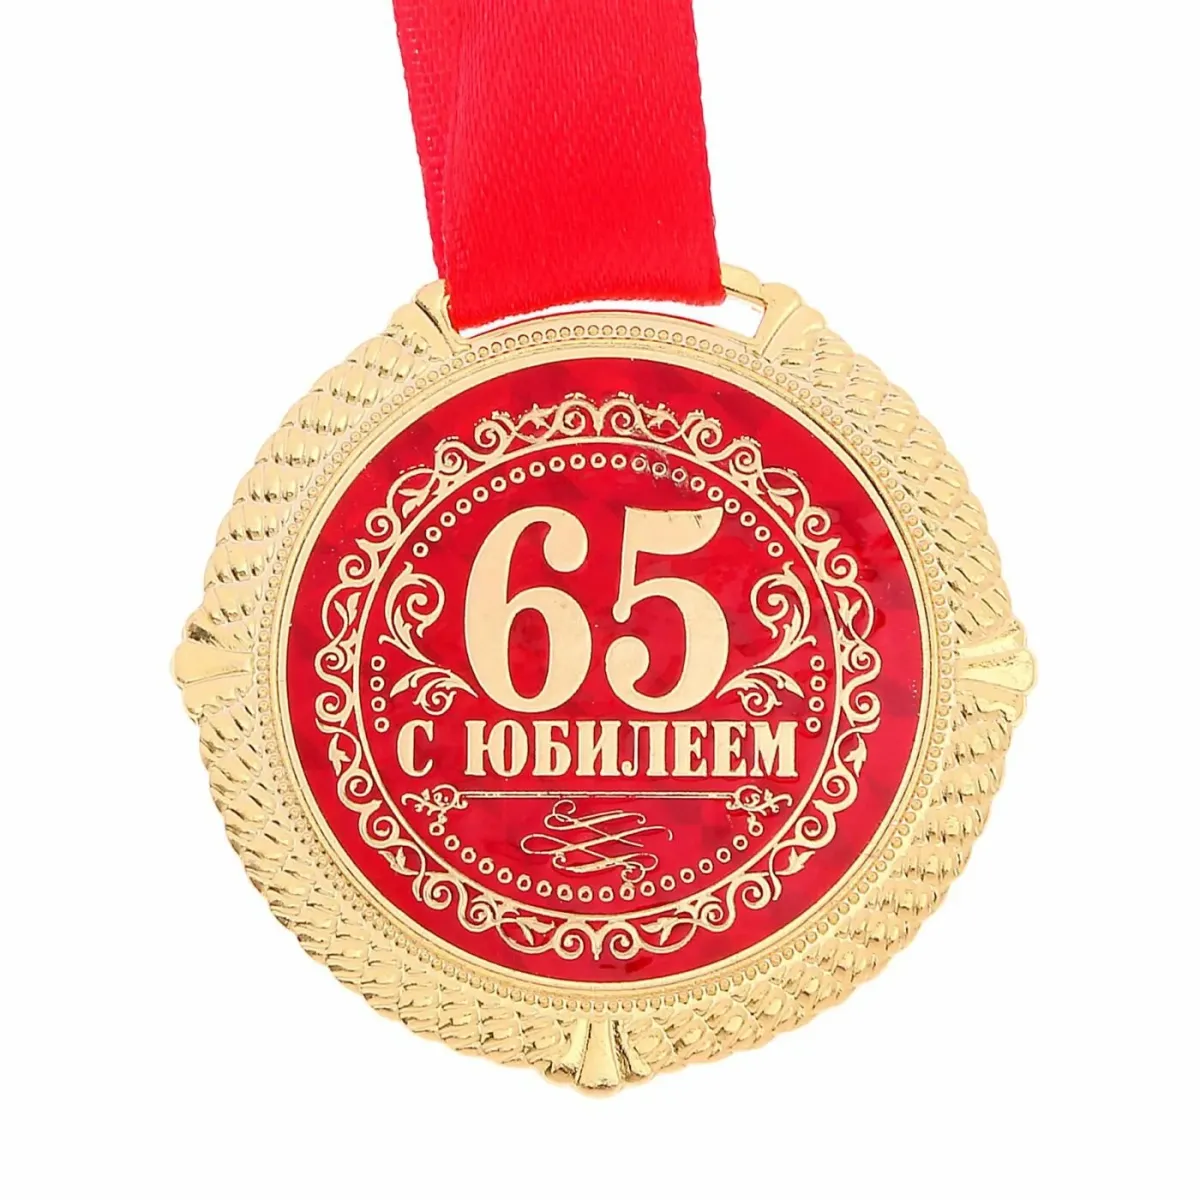 Конкурс на юбилей 65 мужчине. Медаль с юбилеем. Медаль "с юбилеем 65". Медаль "юбиляр". Медаль 65 лет юбилей мужчине.